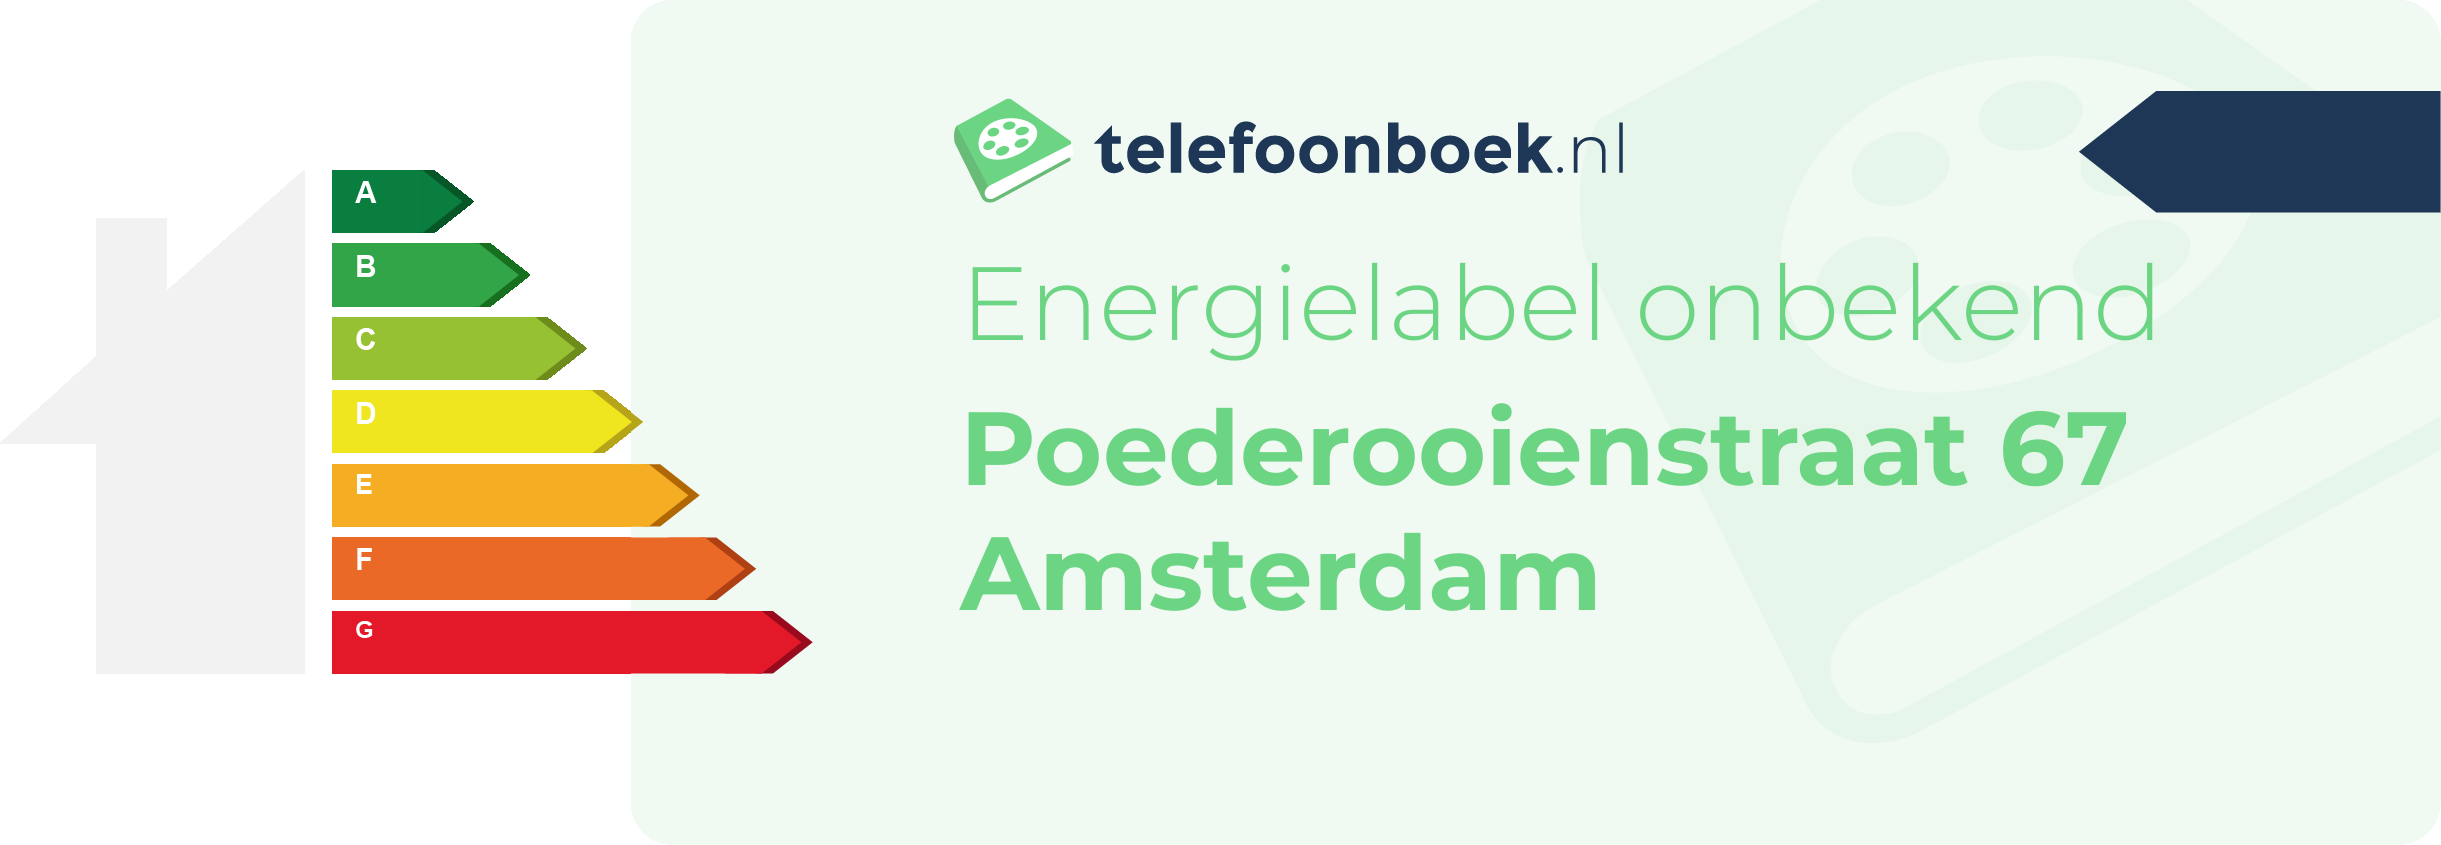 Energielabel Poederooienstraat 67 Amsterdam